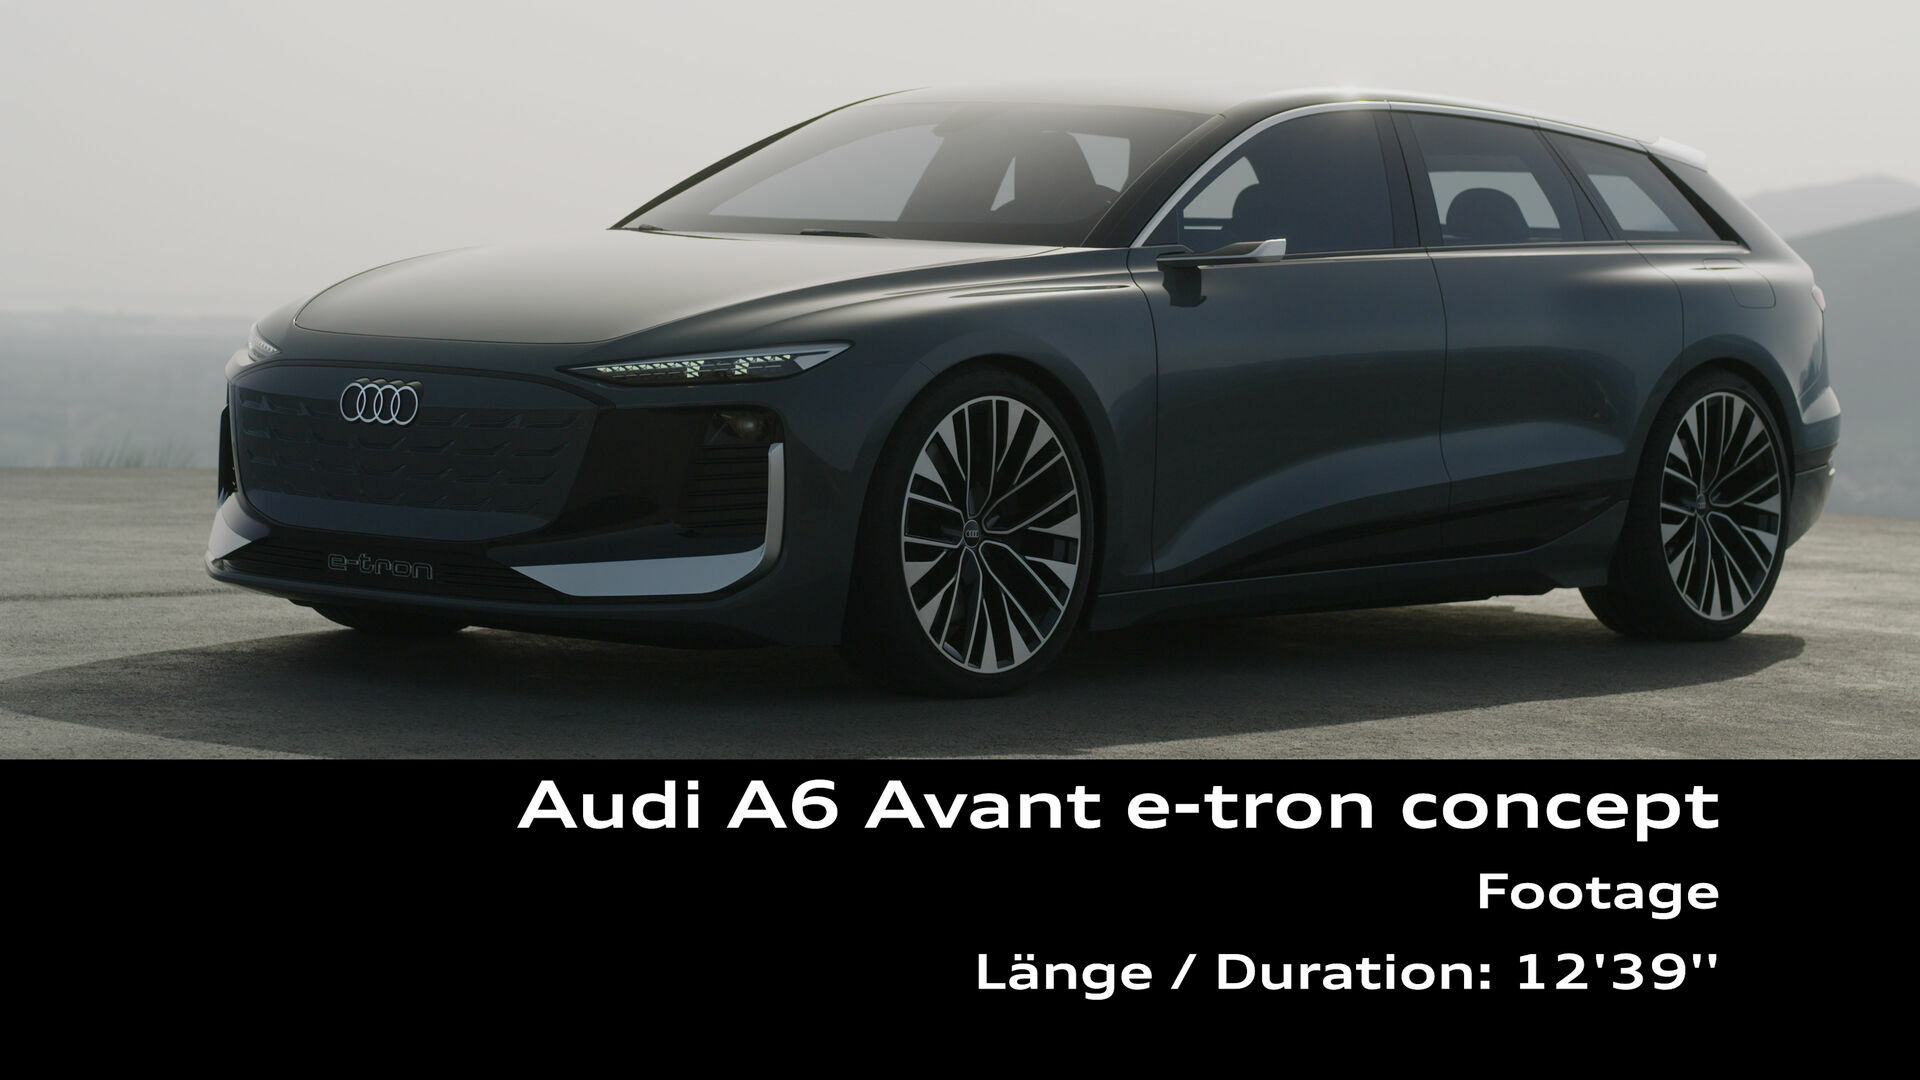 Footage: Audi A6 Avant e-tron concept (Spanien)